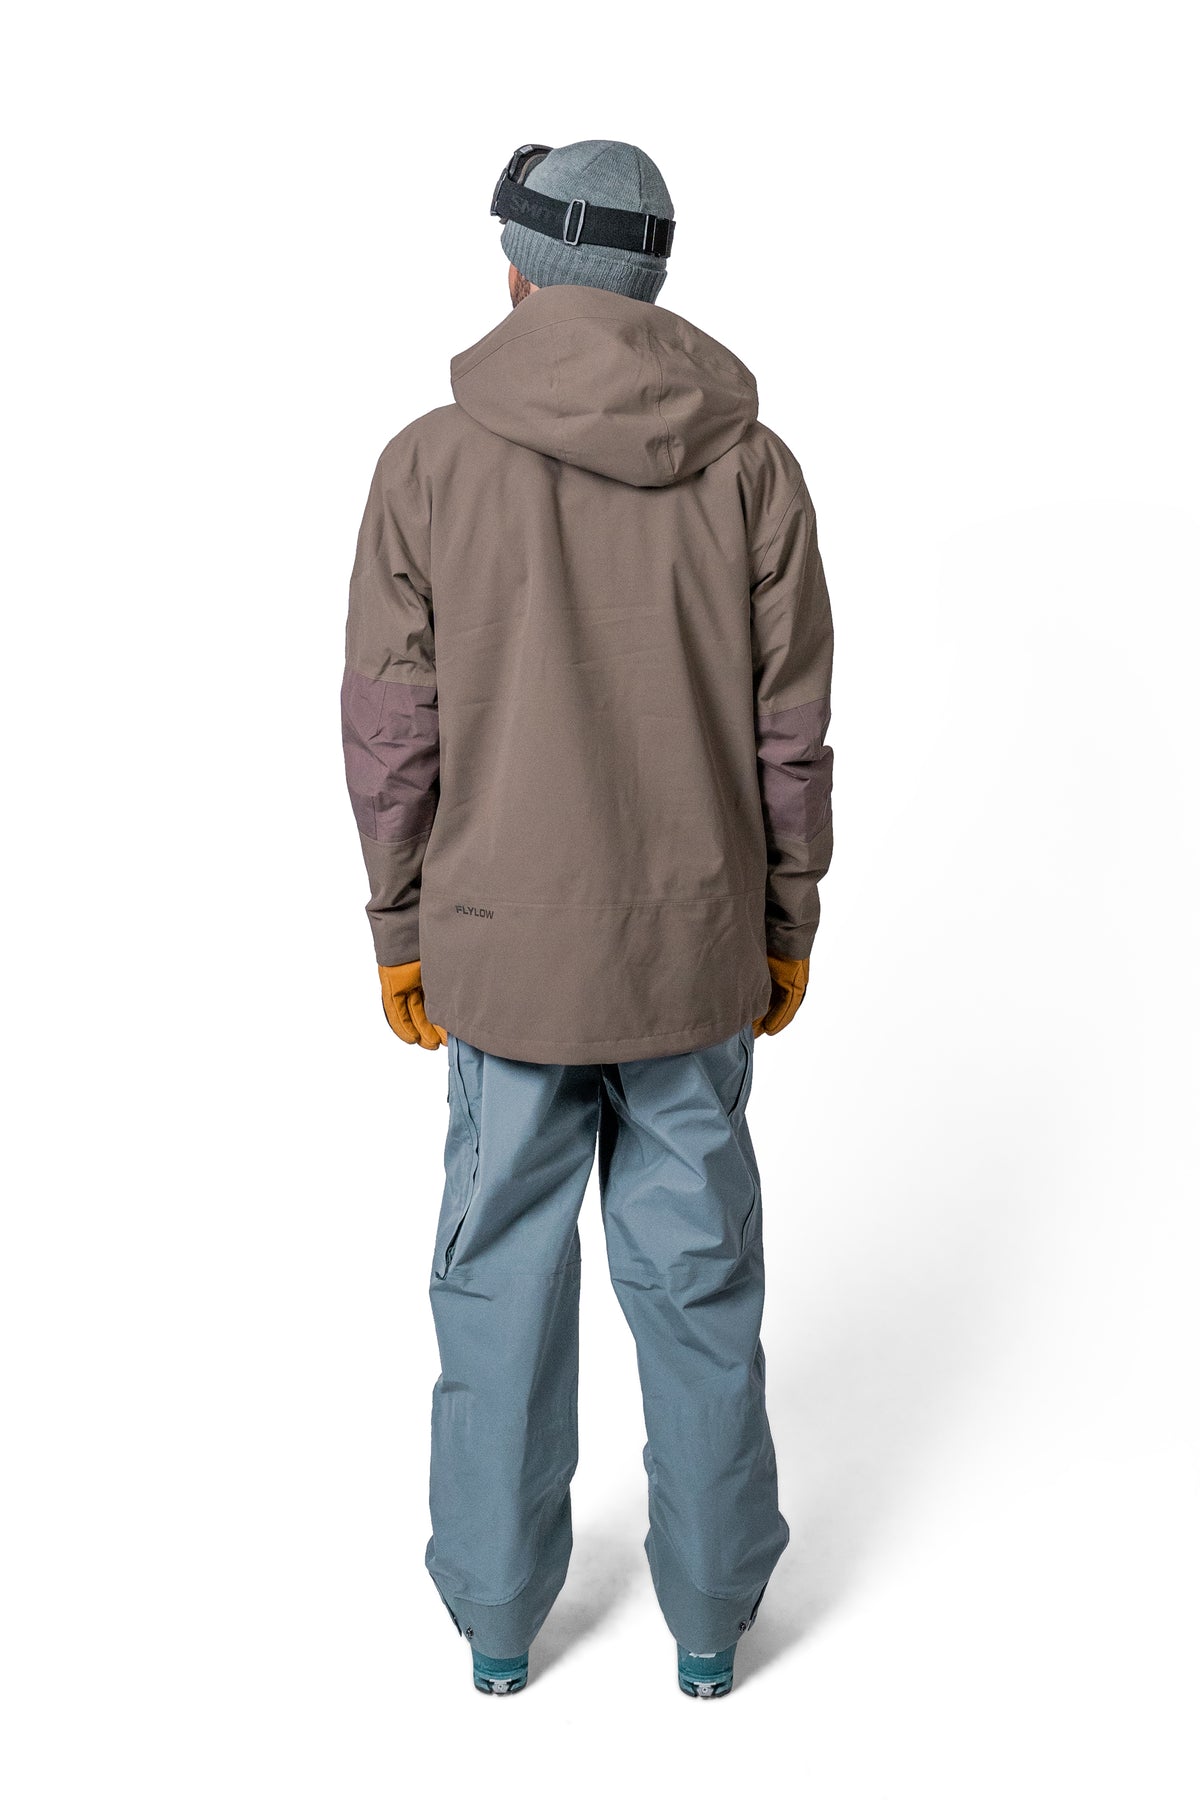 Dante Jacket - Men's Insulated Ski Jacket | Flylow Gear